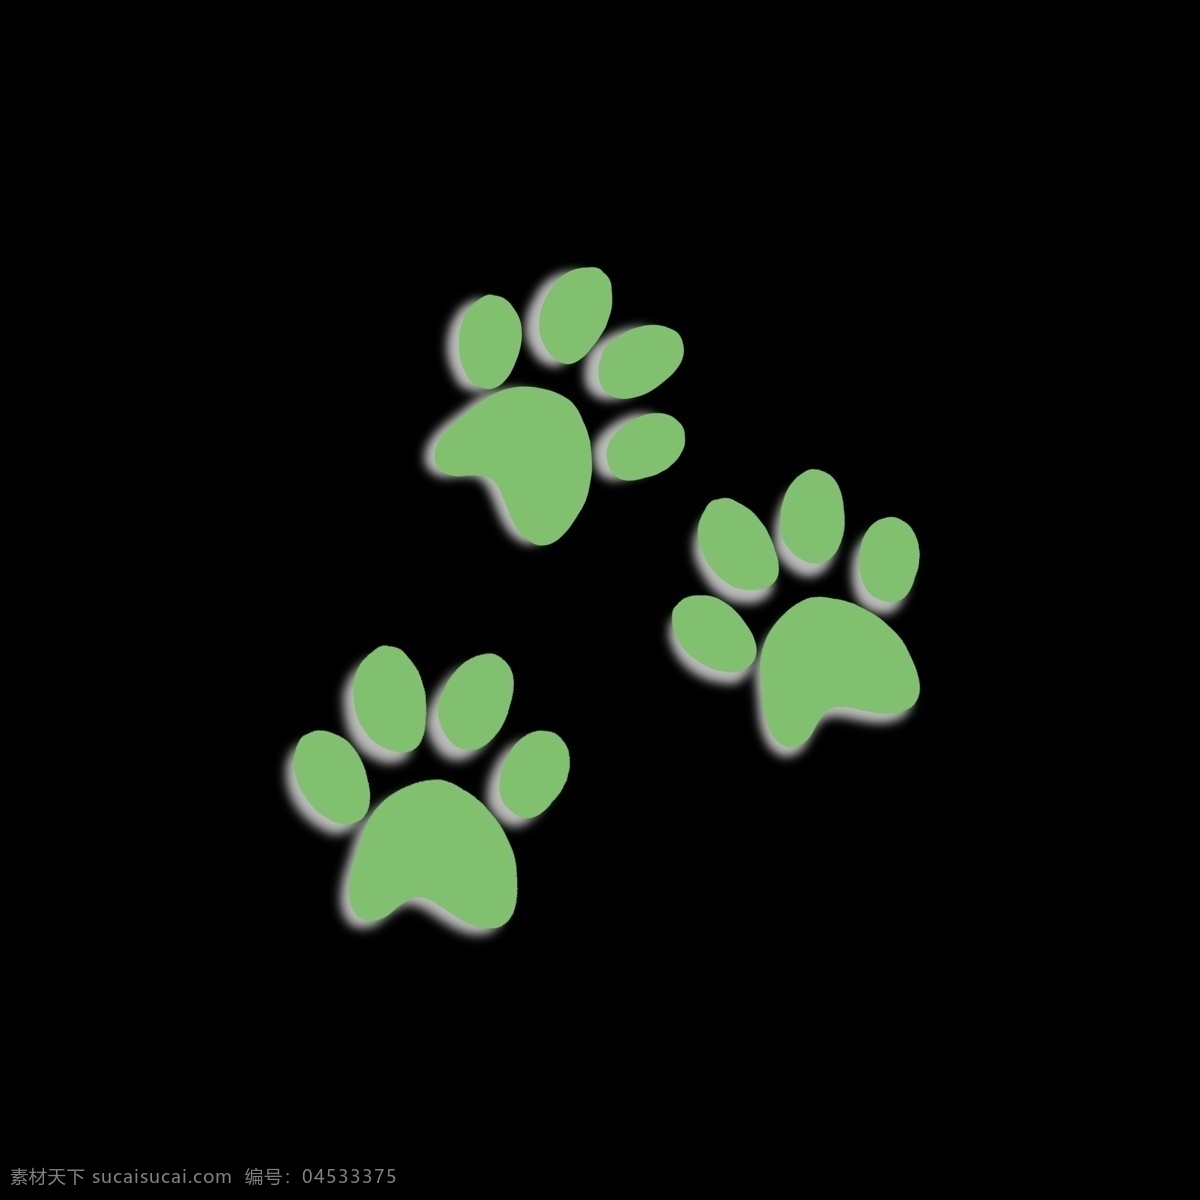 绿色 阴影 样式 猫咪 脚印 猫咪脚印 痕迹 脚丫子 脚丫形状 卡通 简单 简约 简洁 动物脚 几何形状